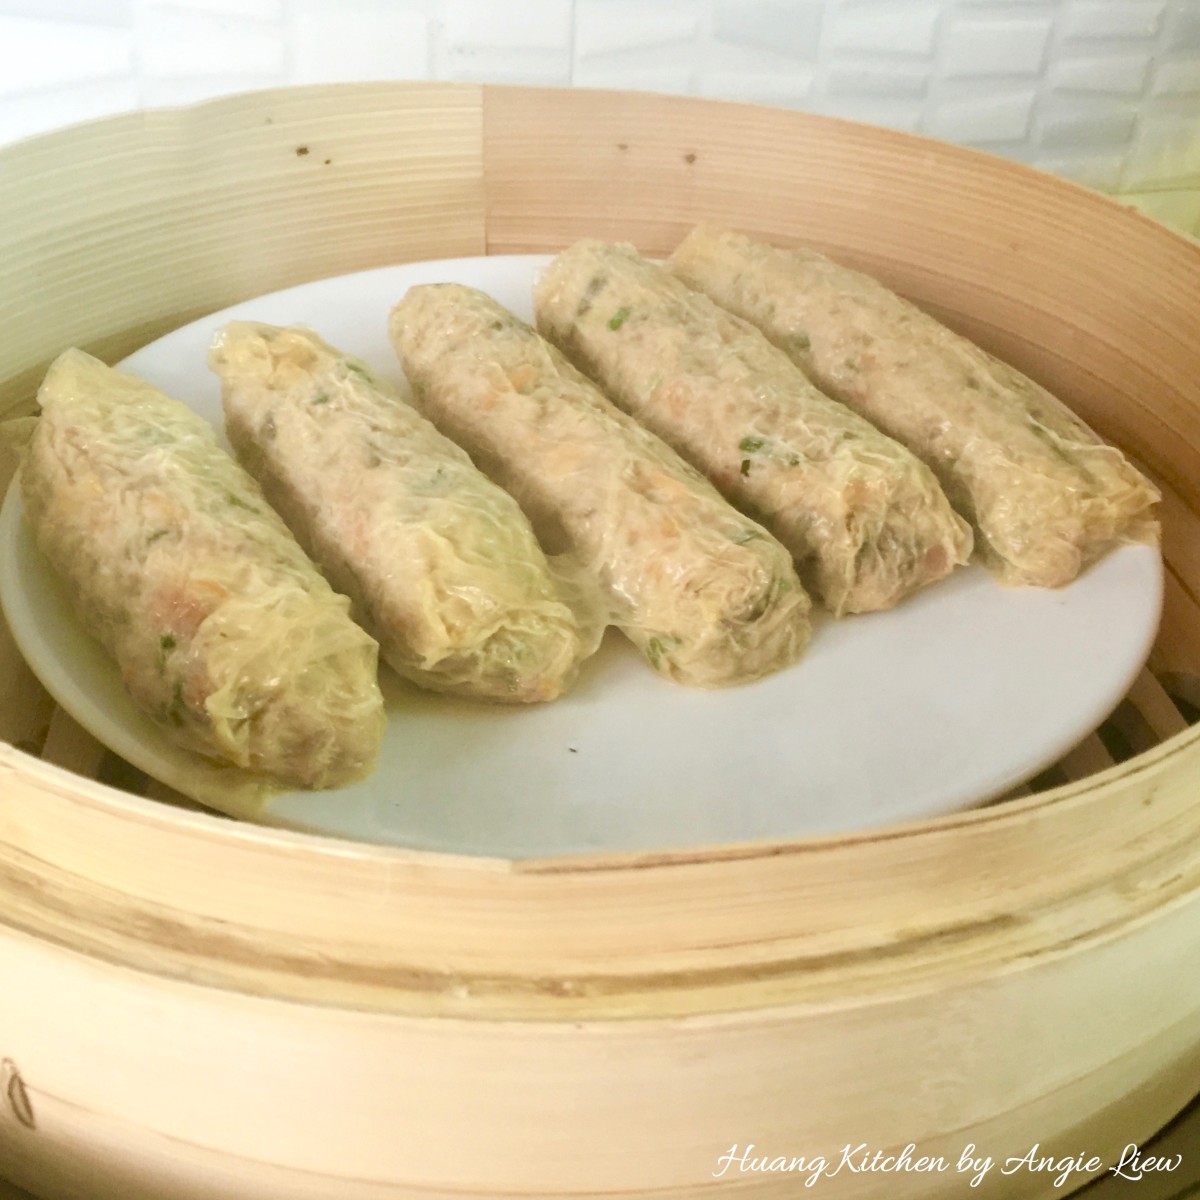 Chinese Meat Rolls Recipe (Loh Bak/Ngo Hiang) - steamed meat rolls